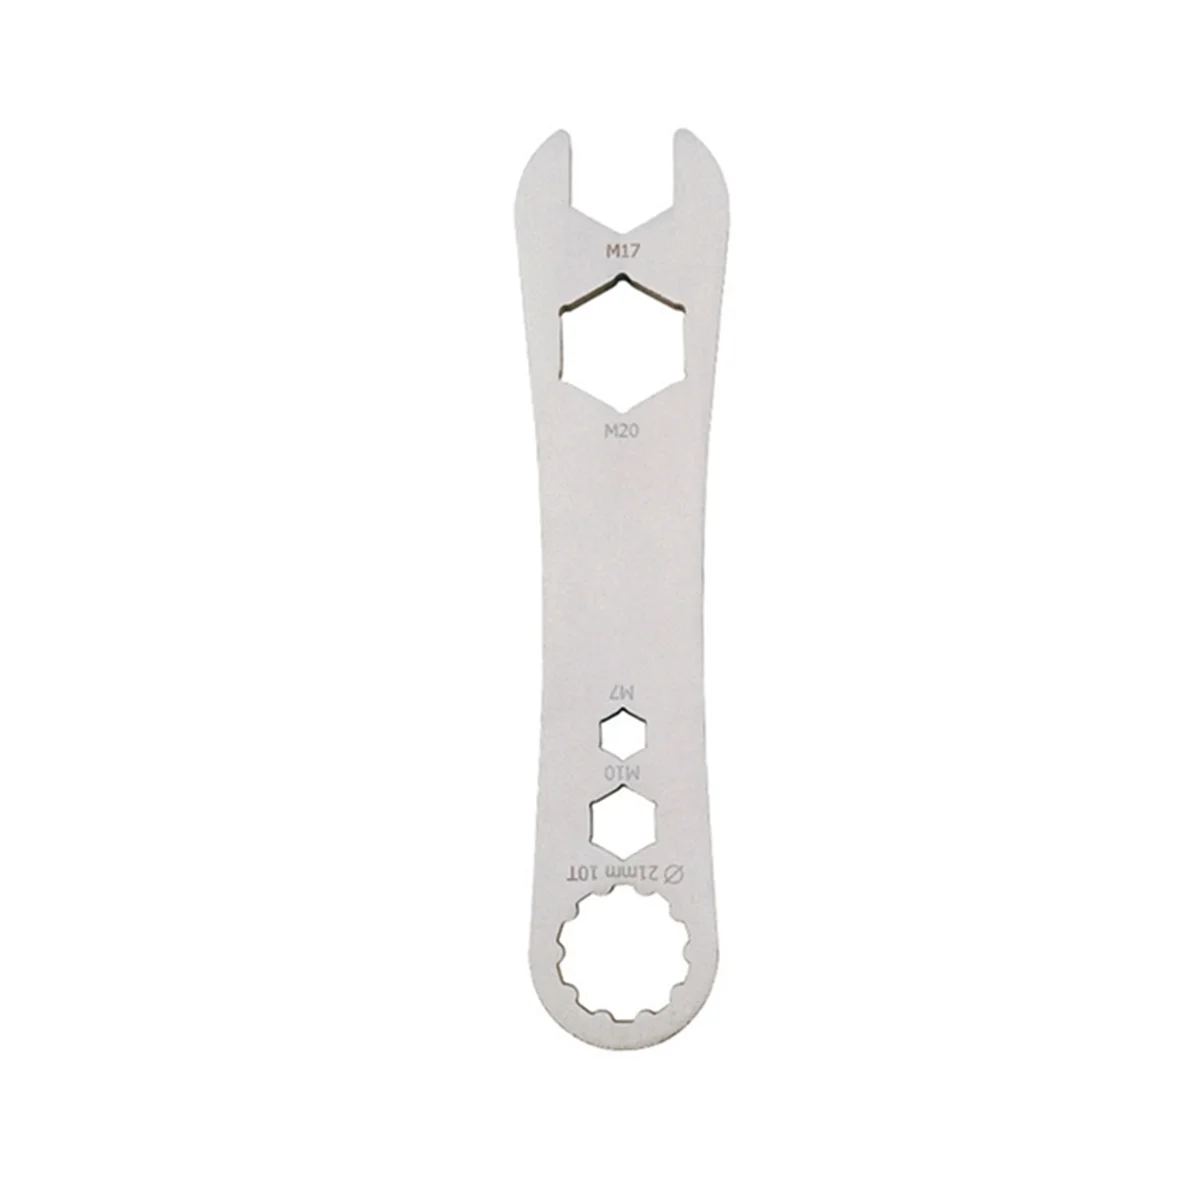 

Ремонтный гаечный ключ, профессиональный инструмент из нержавеющей стали для педалей и шоссейных велосипедов, 10 зубьев, серебристый